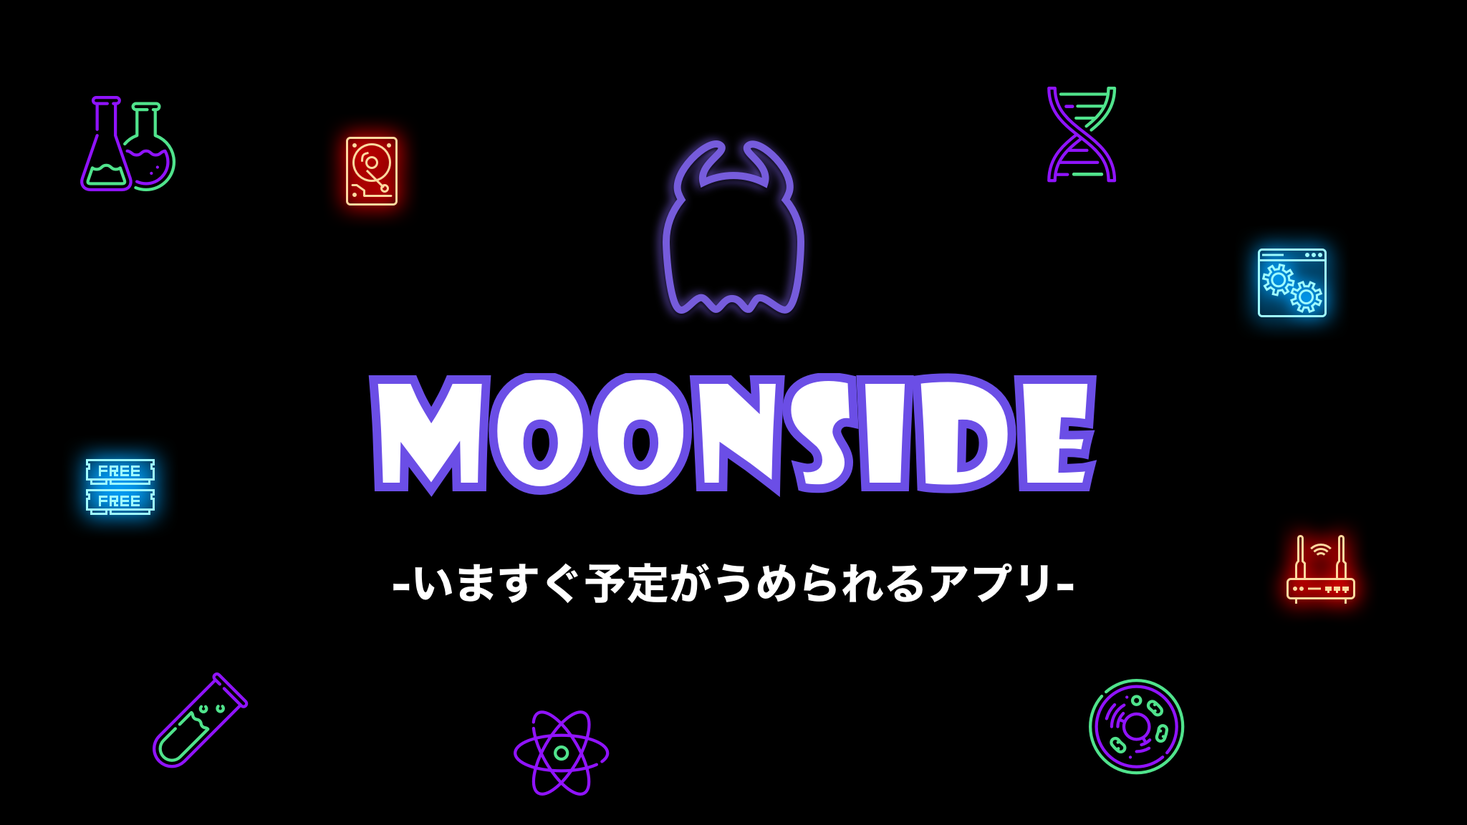 Moonside ムーンサイド の公開終了 新規事業に関するお知らせ 株式会社アダビト 株式会社アダビトのプレスリリース